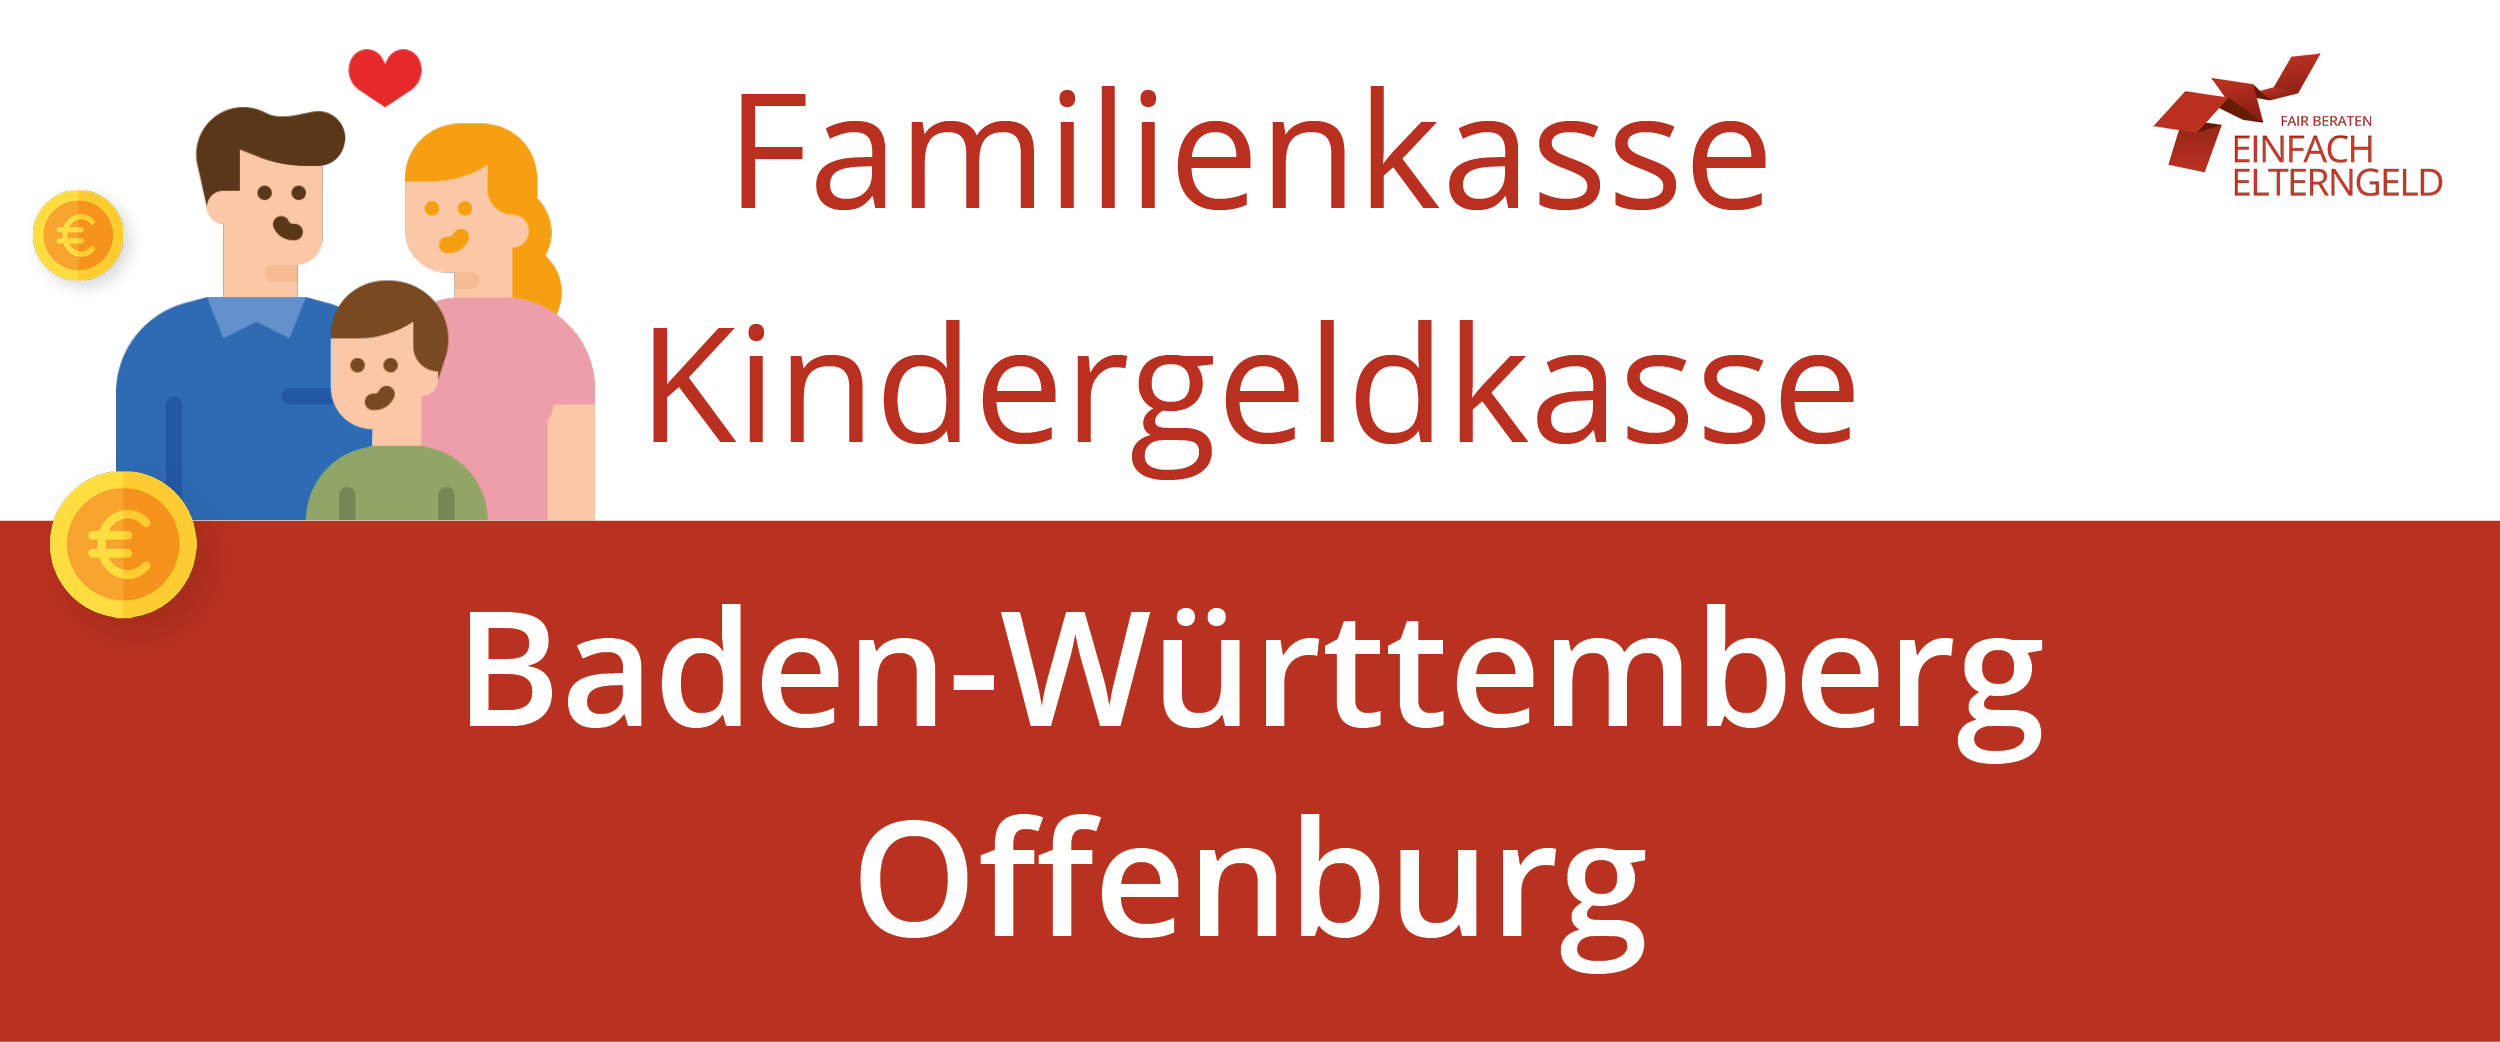 Familienkasse Kindergeldkasse Baden-Württemberg Offenburg - So erreichen Sie Ihre Familienkasse.